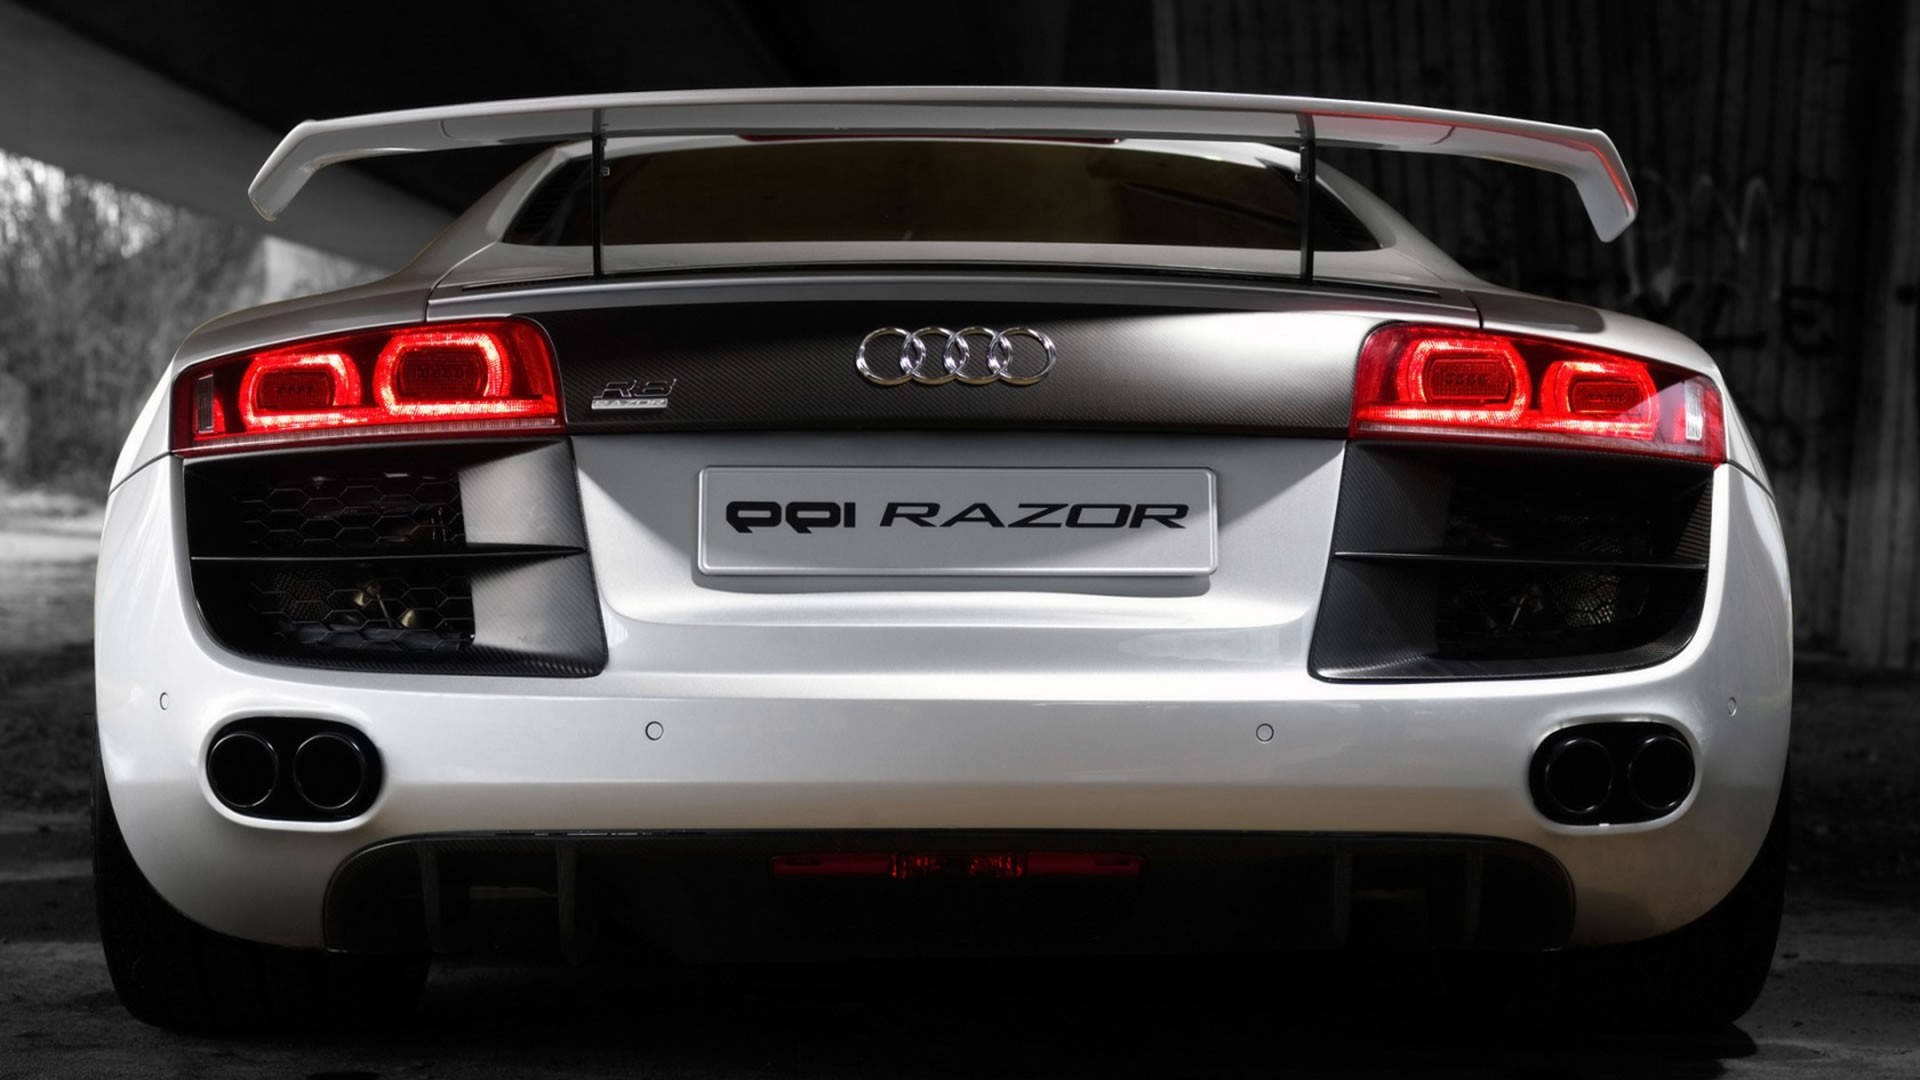 Radiance Of Luxury - Audi R8 Ppi Razor Background